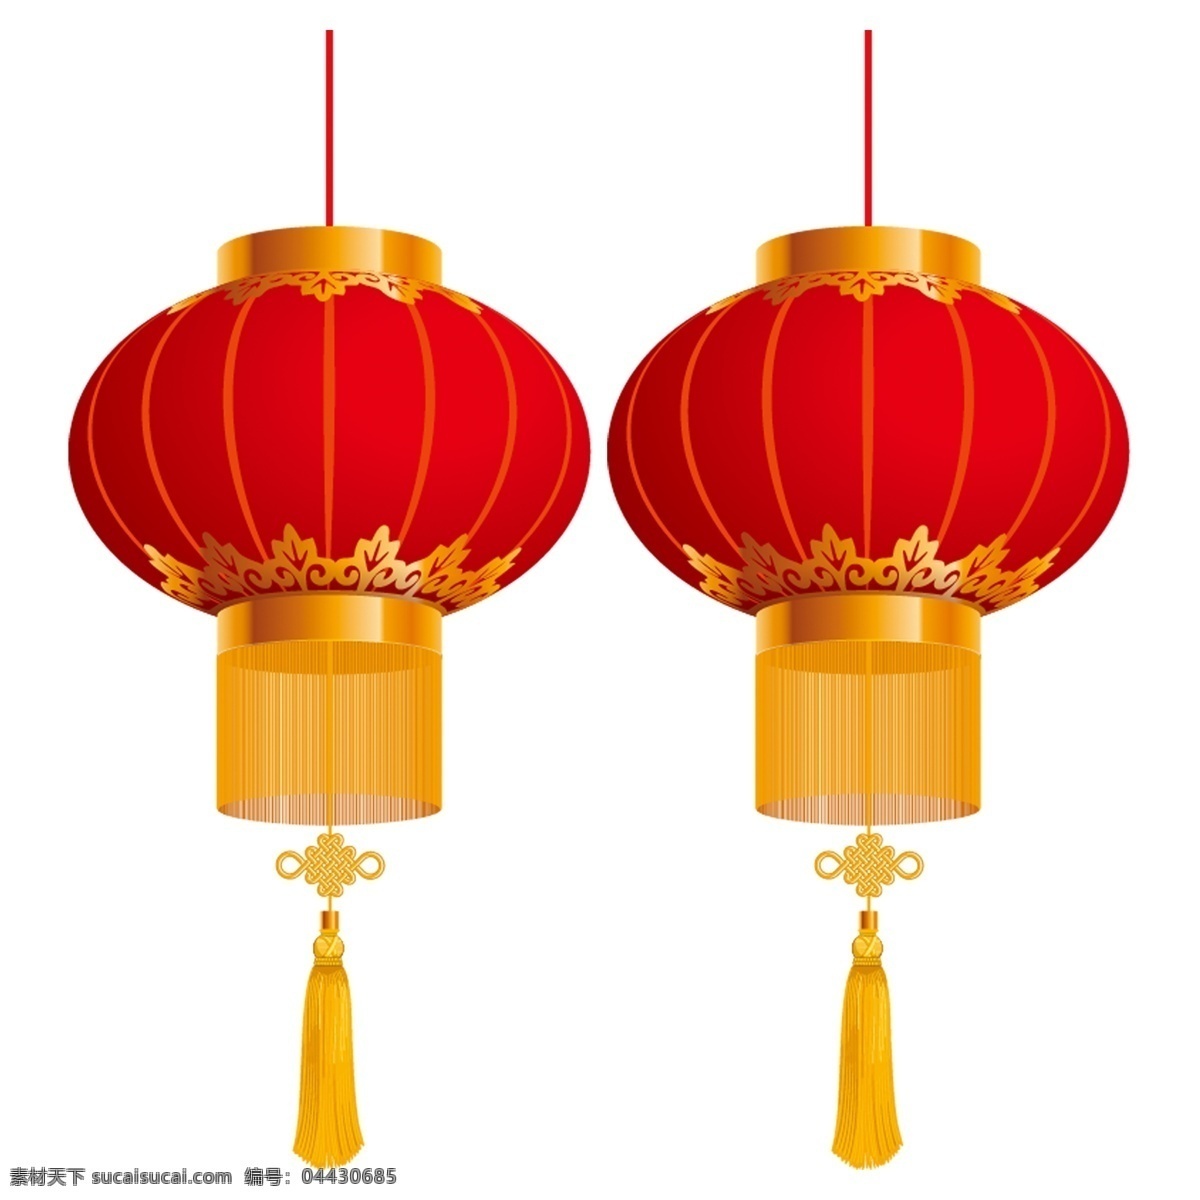 中国新年灯笼 中国 新年 灯笼 春节 海报素材